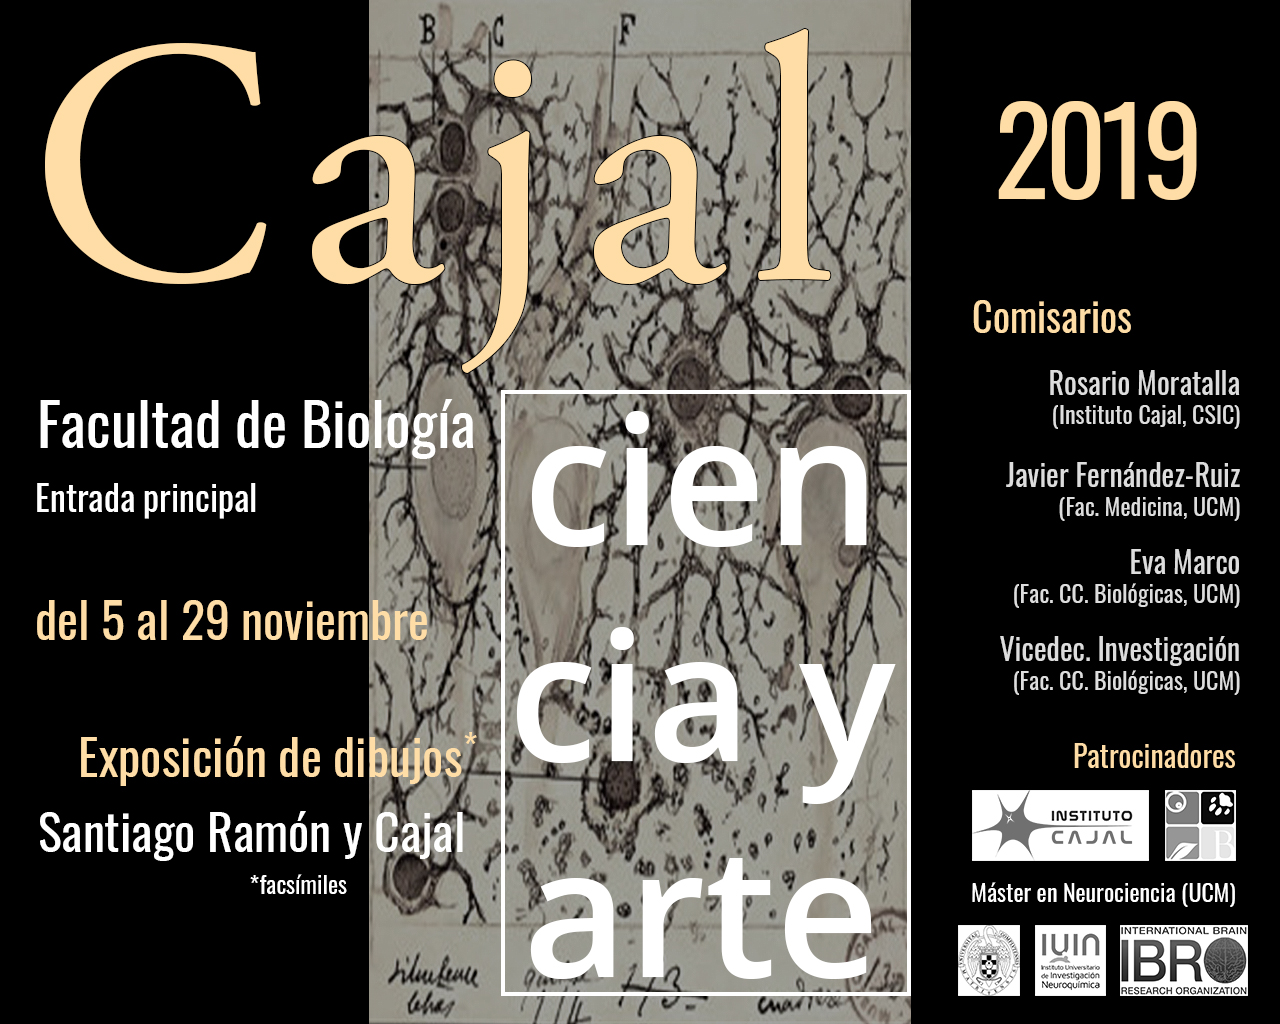 Del 5 al 29 de noviembre - Exposición de dibujos Santiago Ramón y Cajal